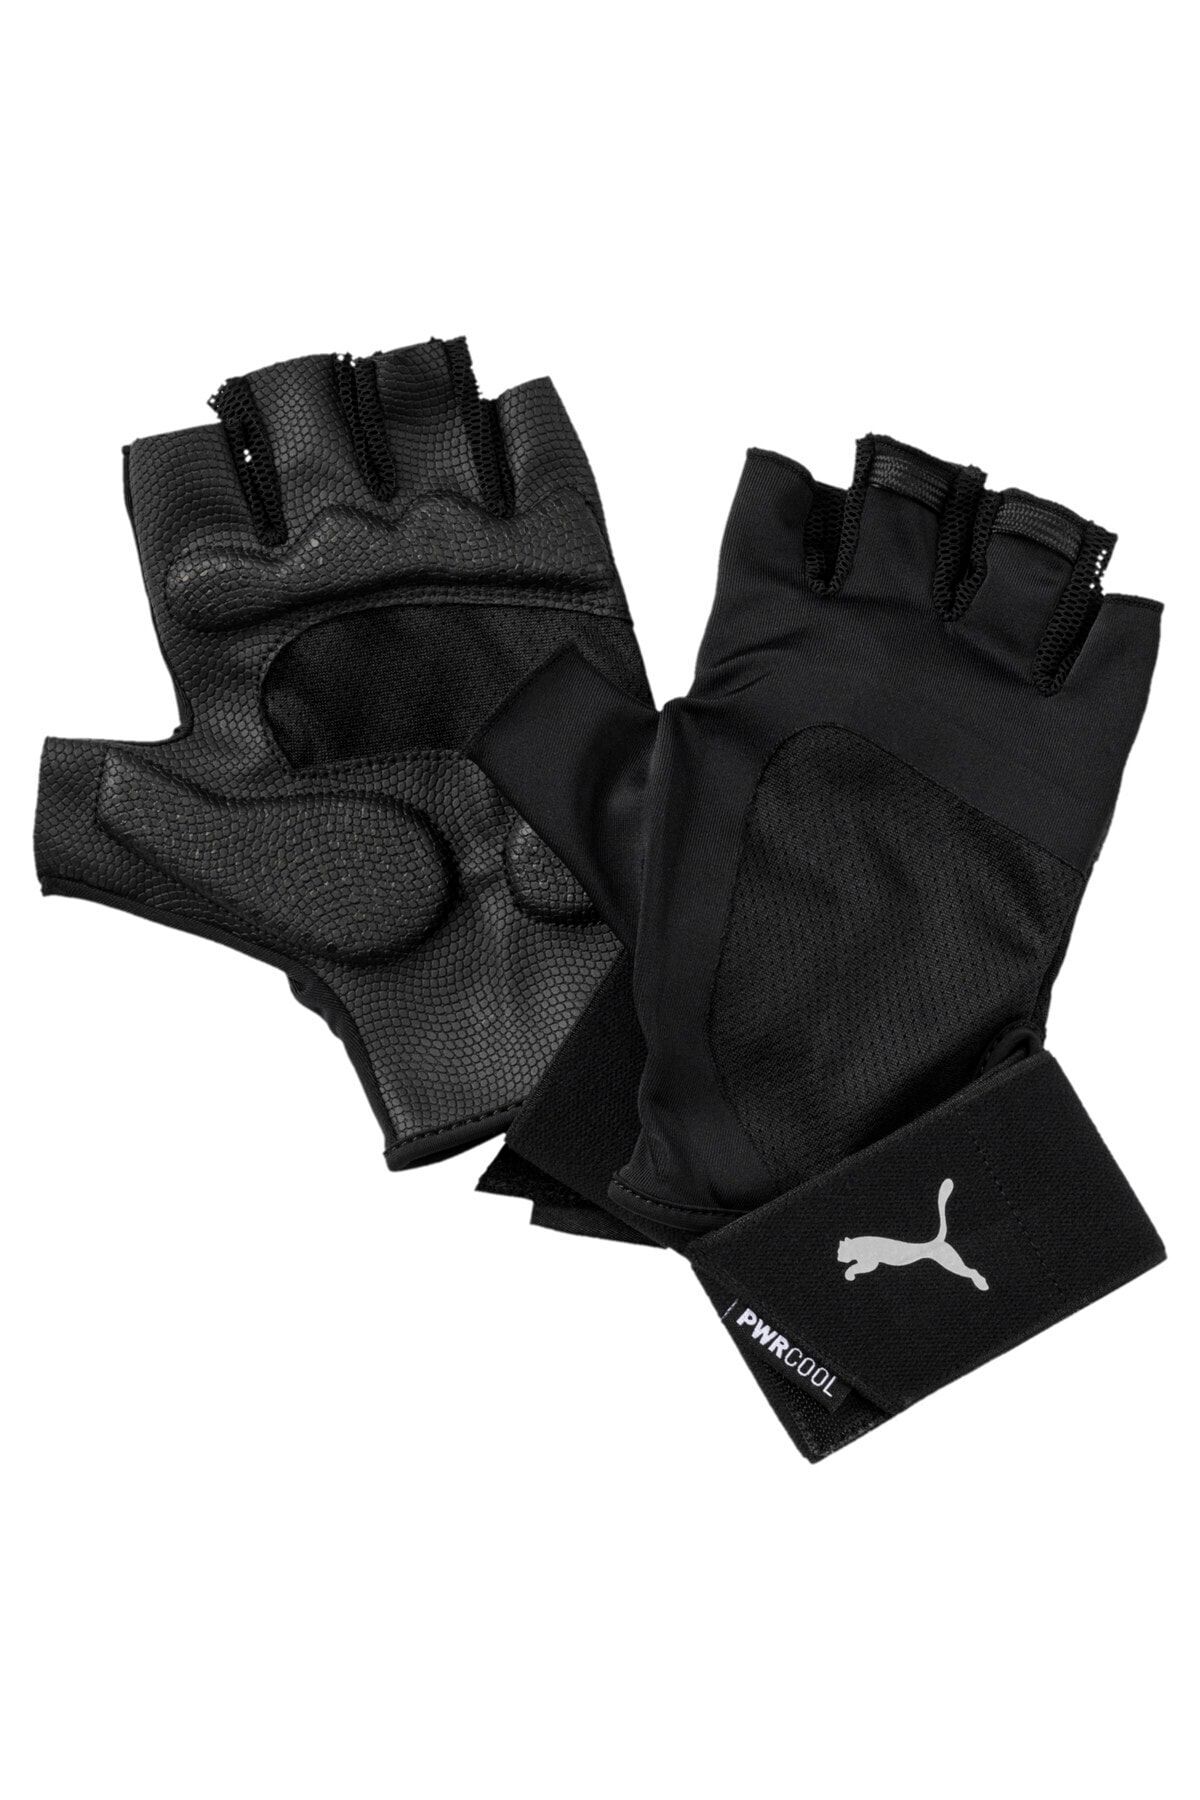 Puma TR Ess Gloves Premium04146701